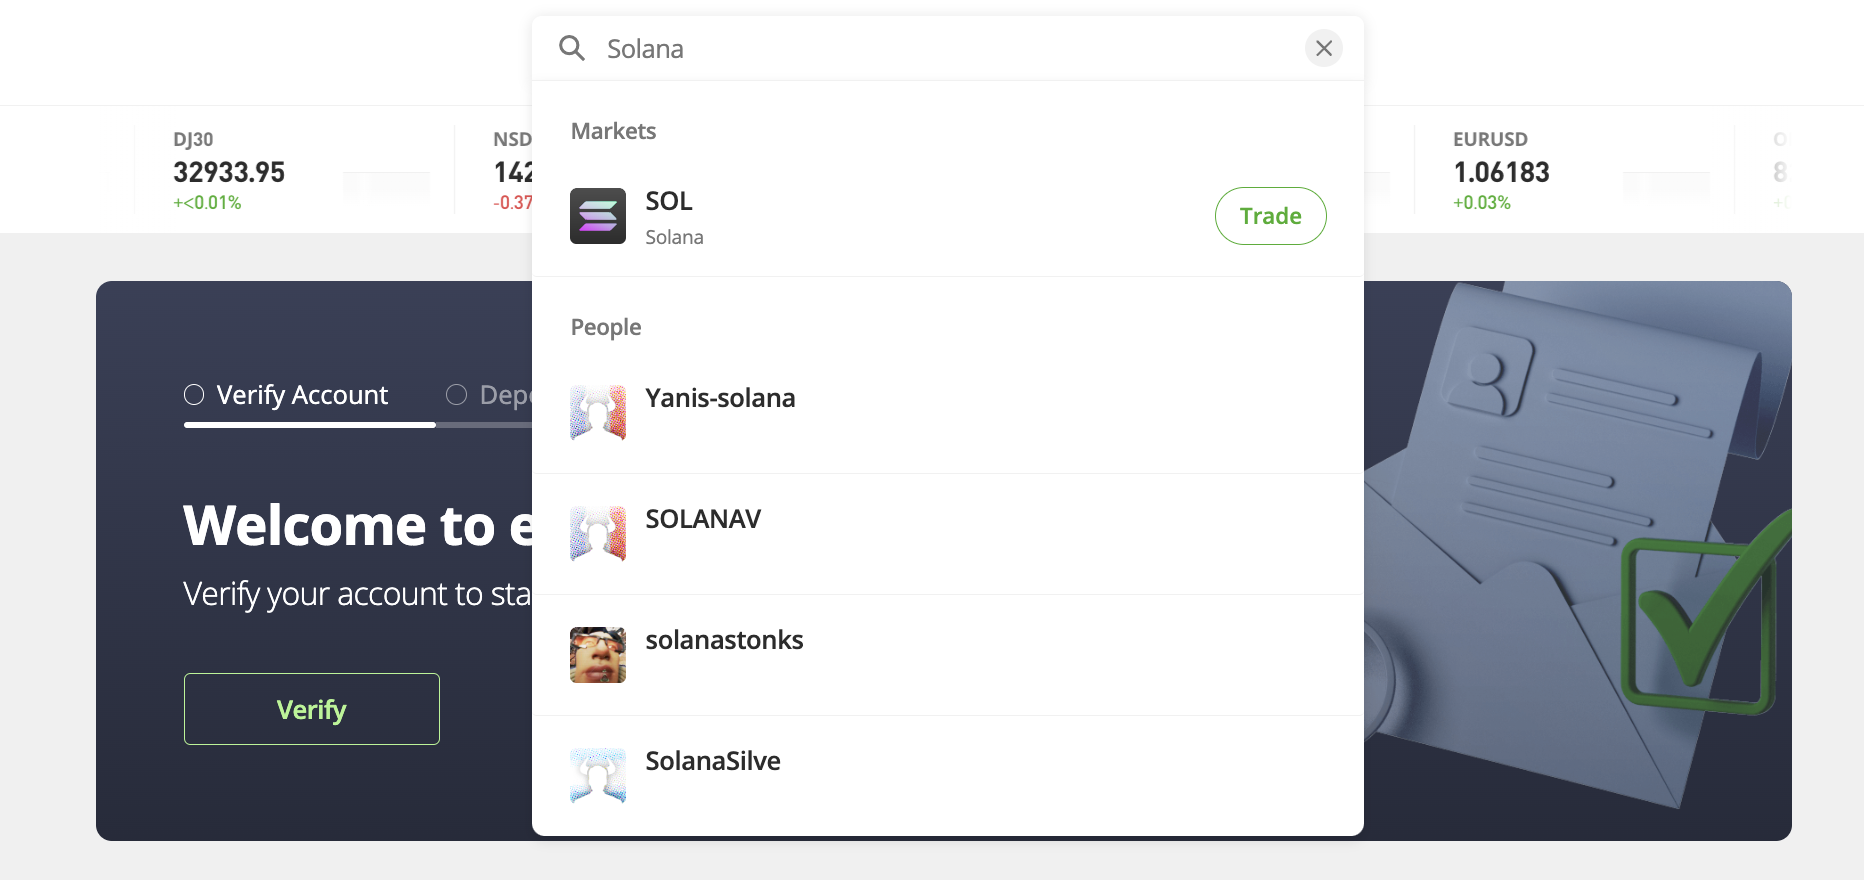 Search for Solana on eToro